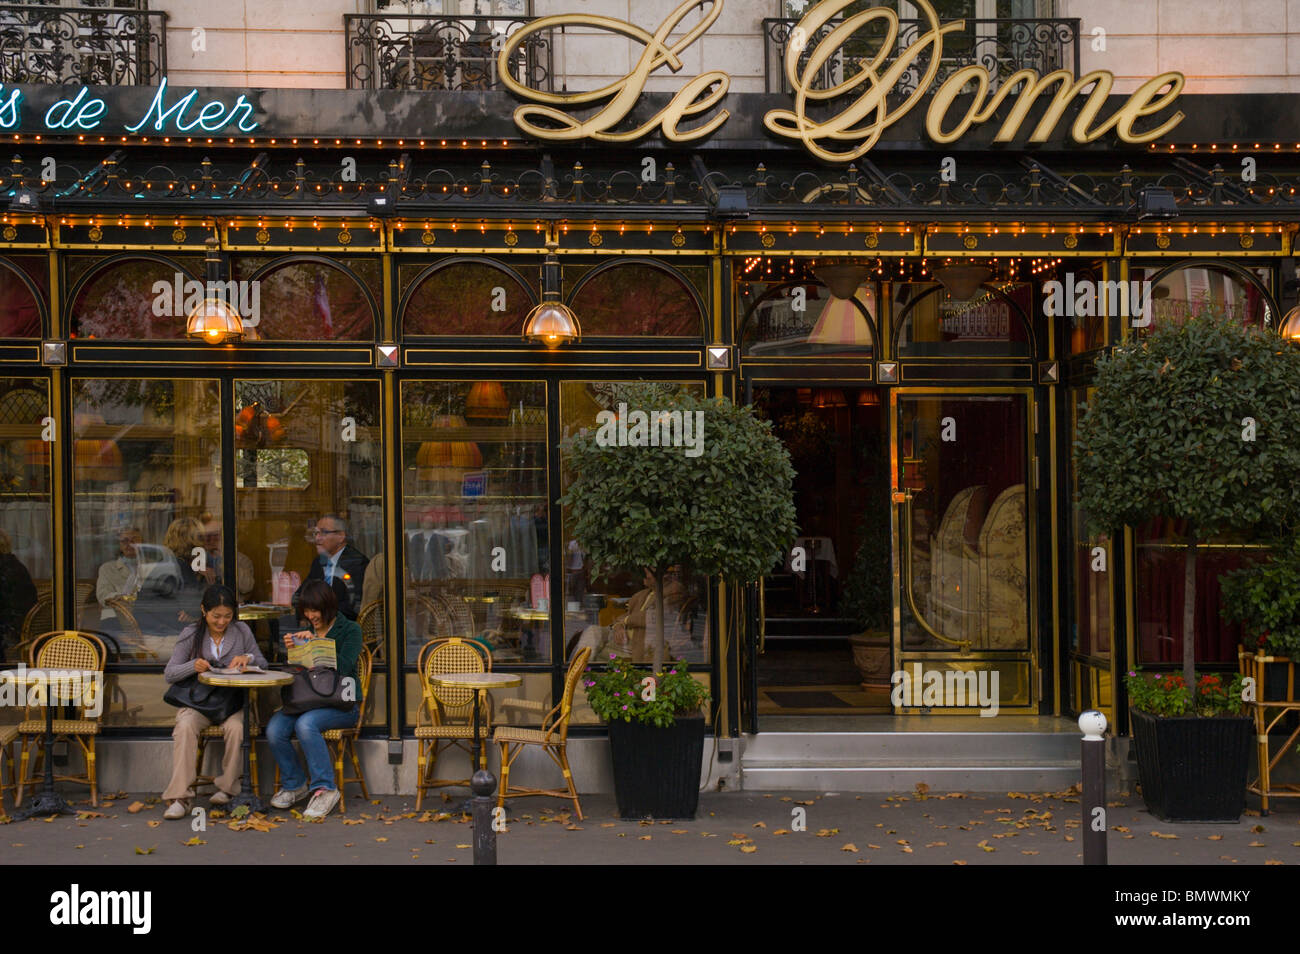 Le Dome café et fruits de mer restaurant Montparnasse Paris France Europe Banque D'Images